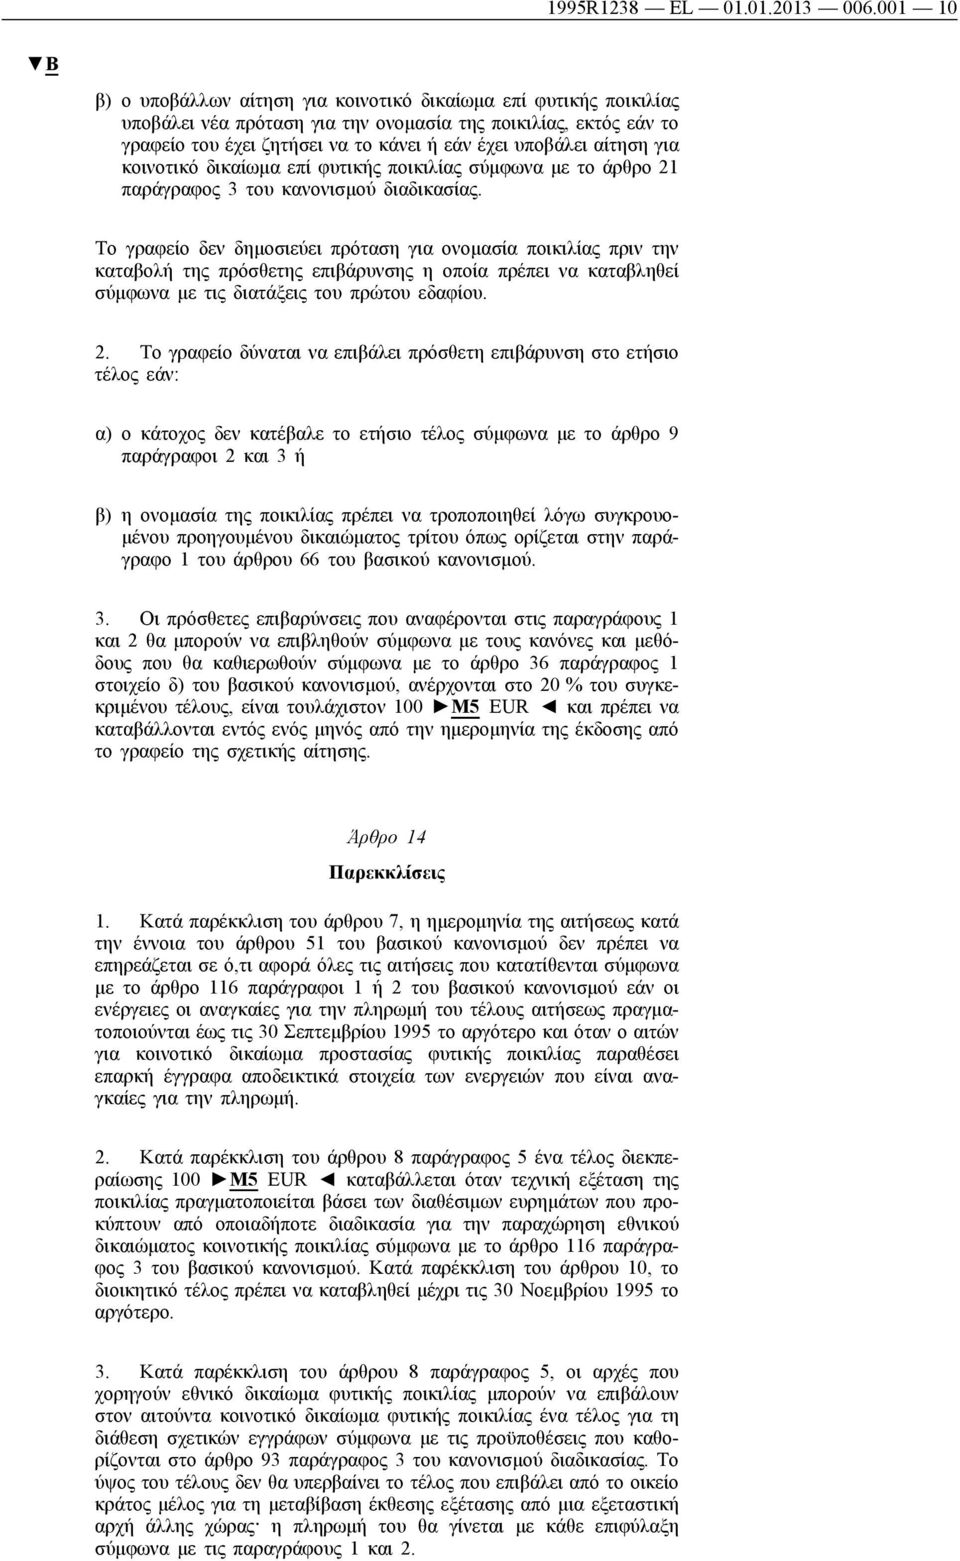 αίτηση για κοινοτικό δικαίωμα επί φυτικής ποικιλίας σύμφωνα με το άρθρο 21 παράγραφος 3 του κανονισμού διαδικασίας.